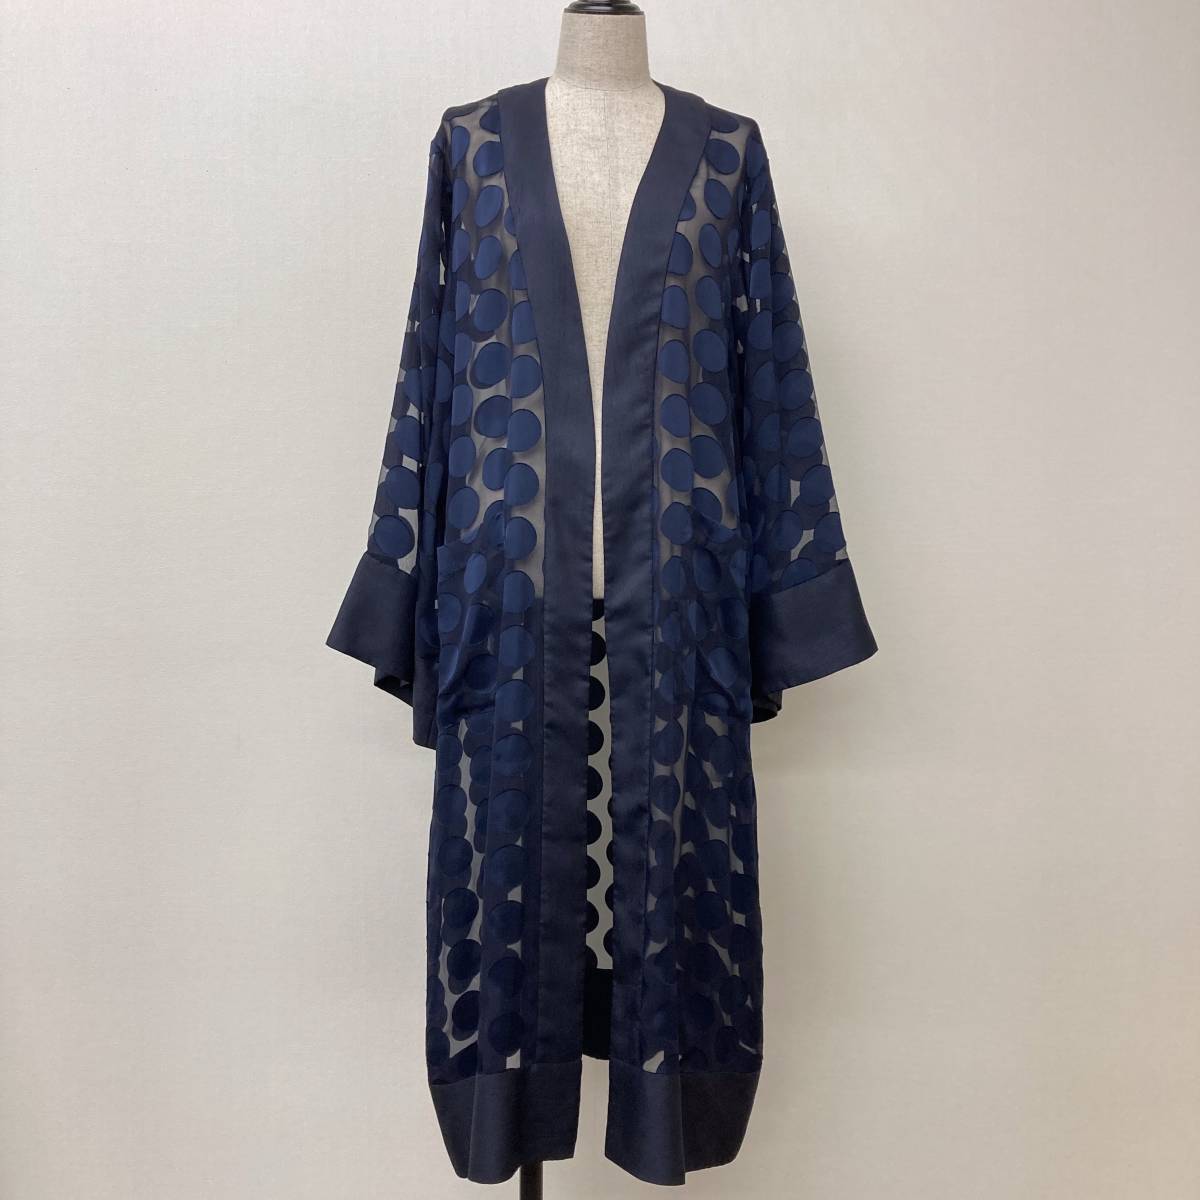 KIIRO три сосна прозрачный полька-дот свободная домашняя одежда перо ткань темно-синий темно-синий M размер желтый ... кимоно перо ткань длинное пальто 3070492